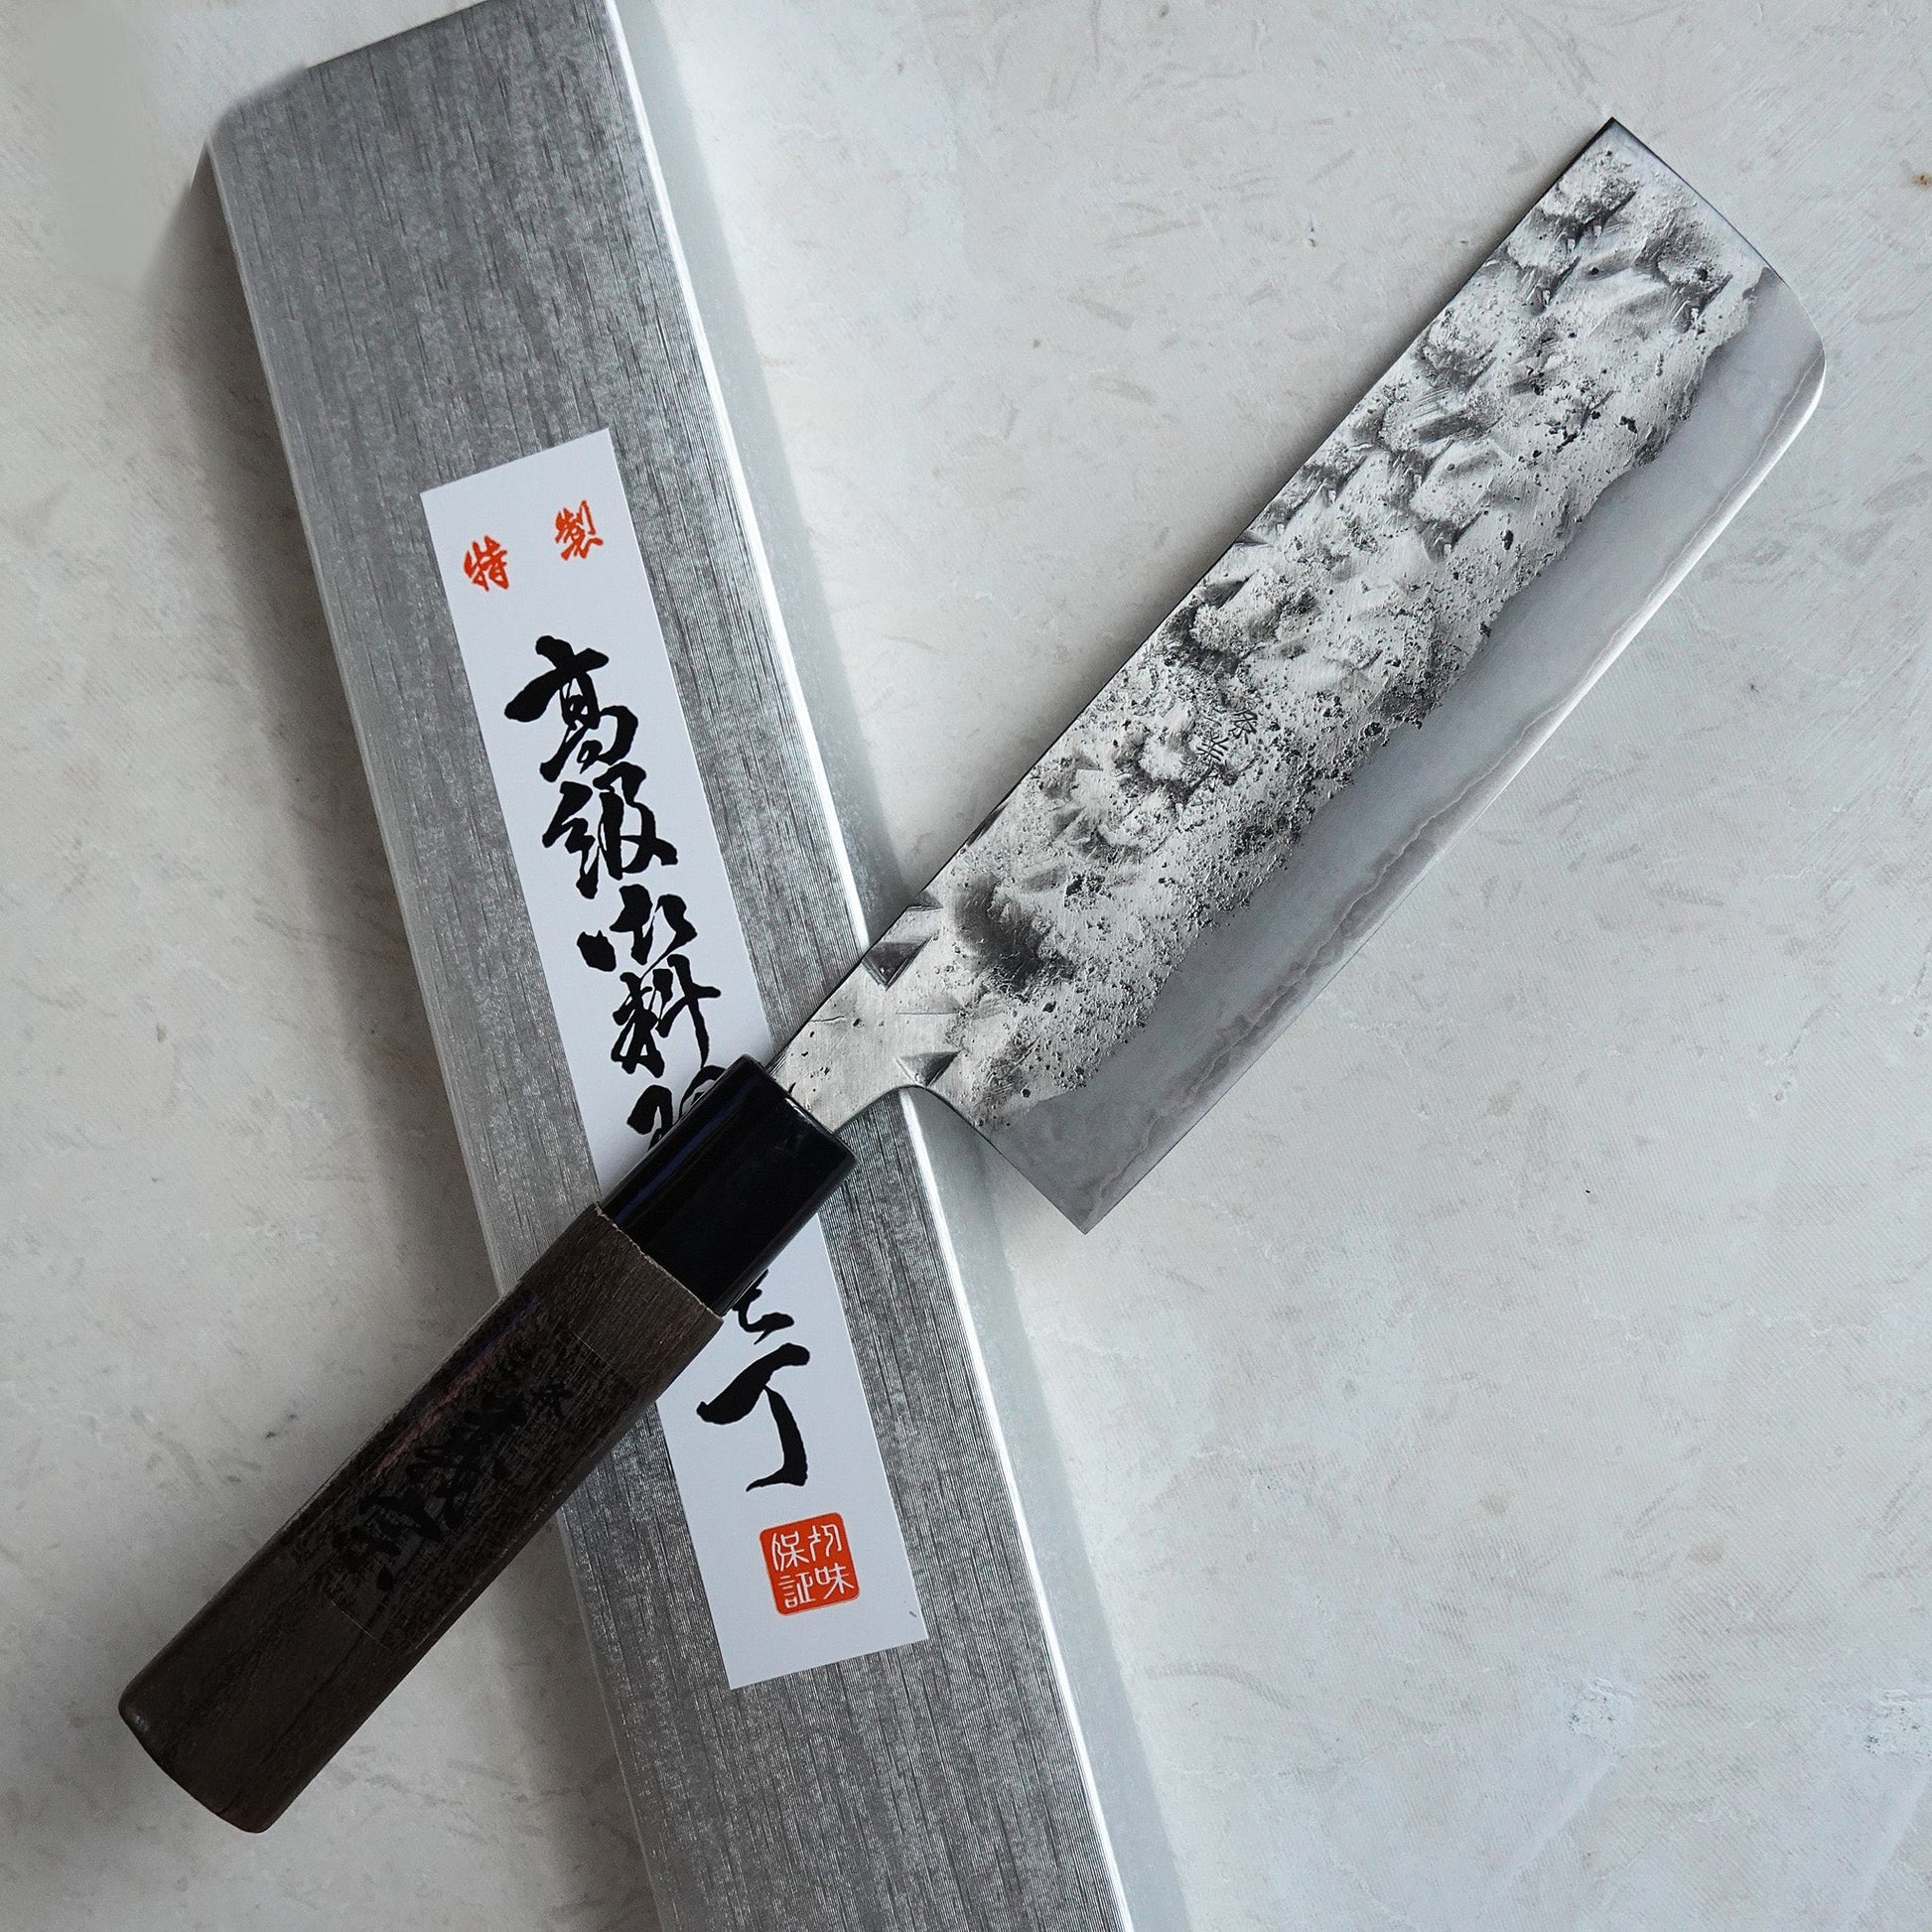 Cuchillo japonés Tanto artesano > Espadas y mas